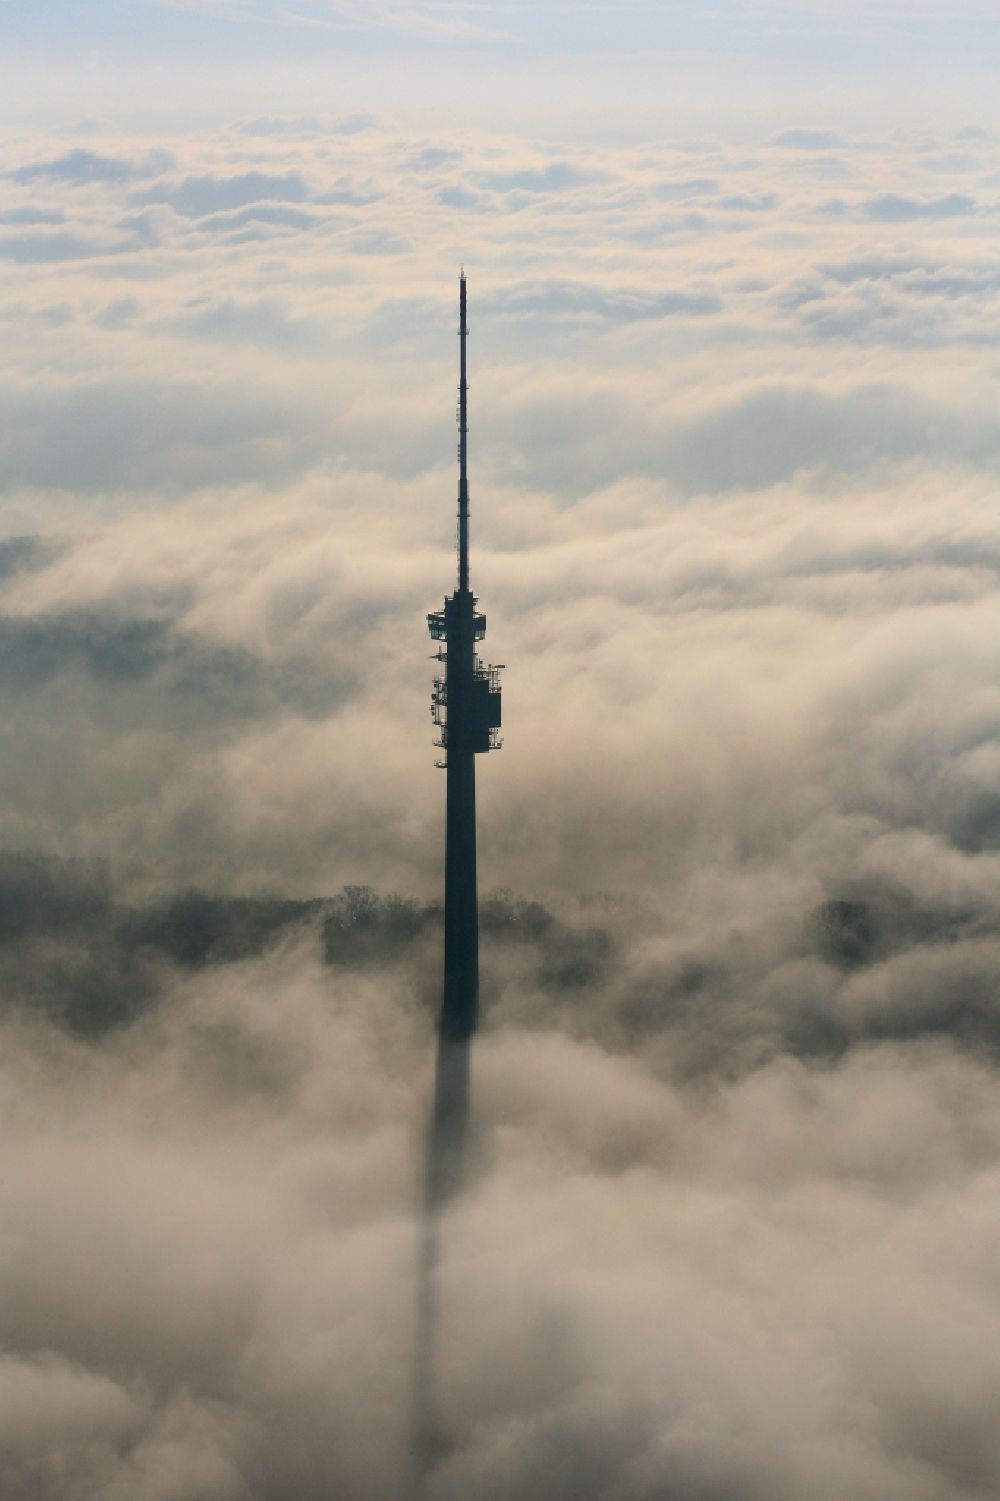 Bettingen von oben - Fernmeldeturm und Fernsehturm St. Chrischona ragt aus der Nebeldecke bei Bettingen in Basel, Schweiz